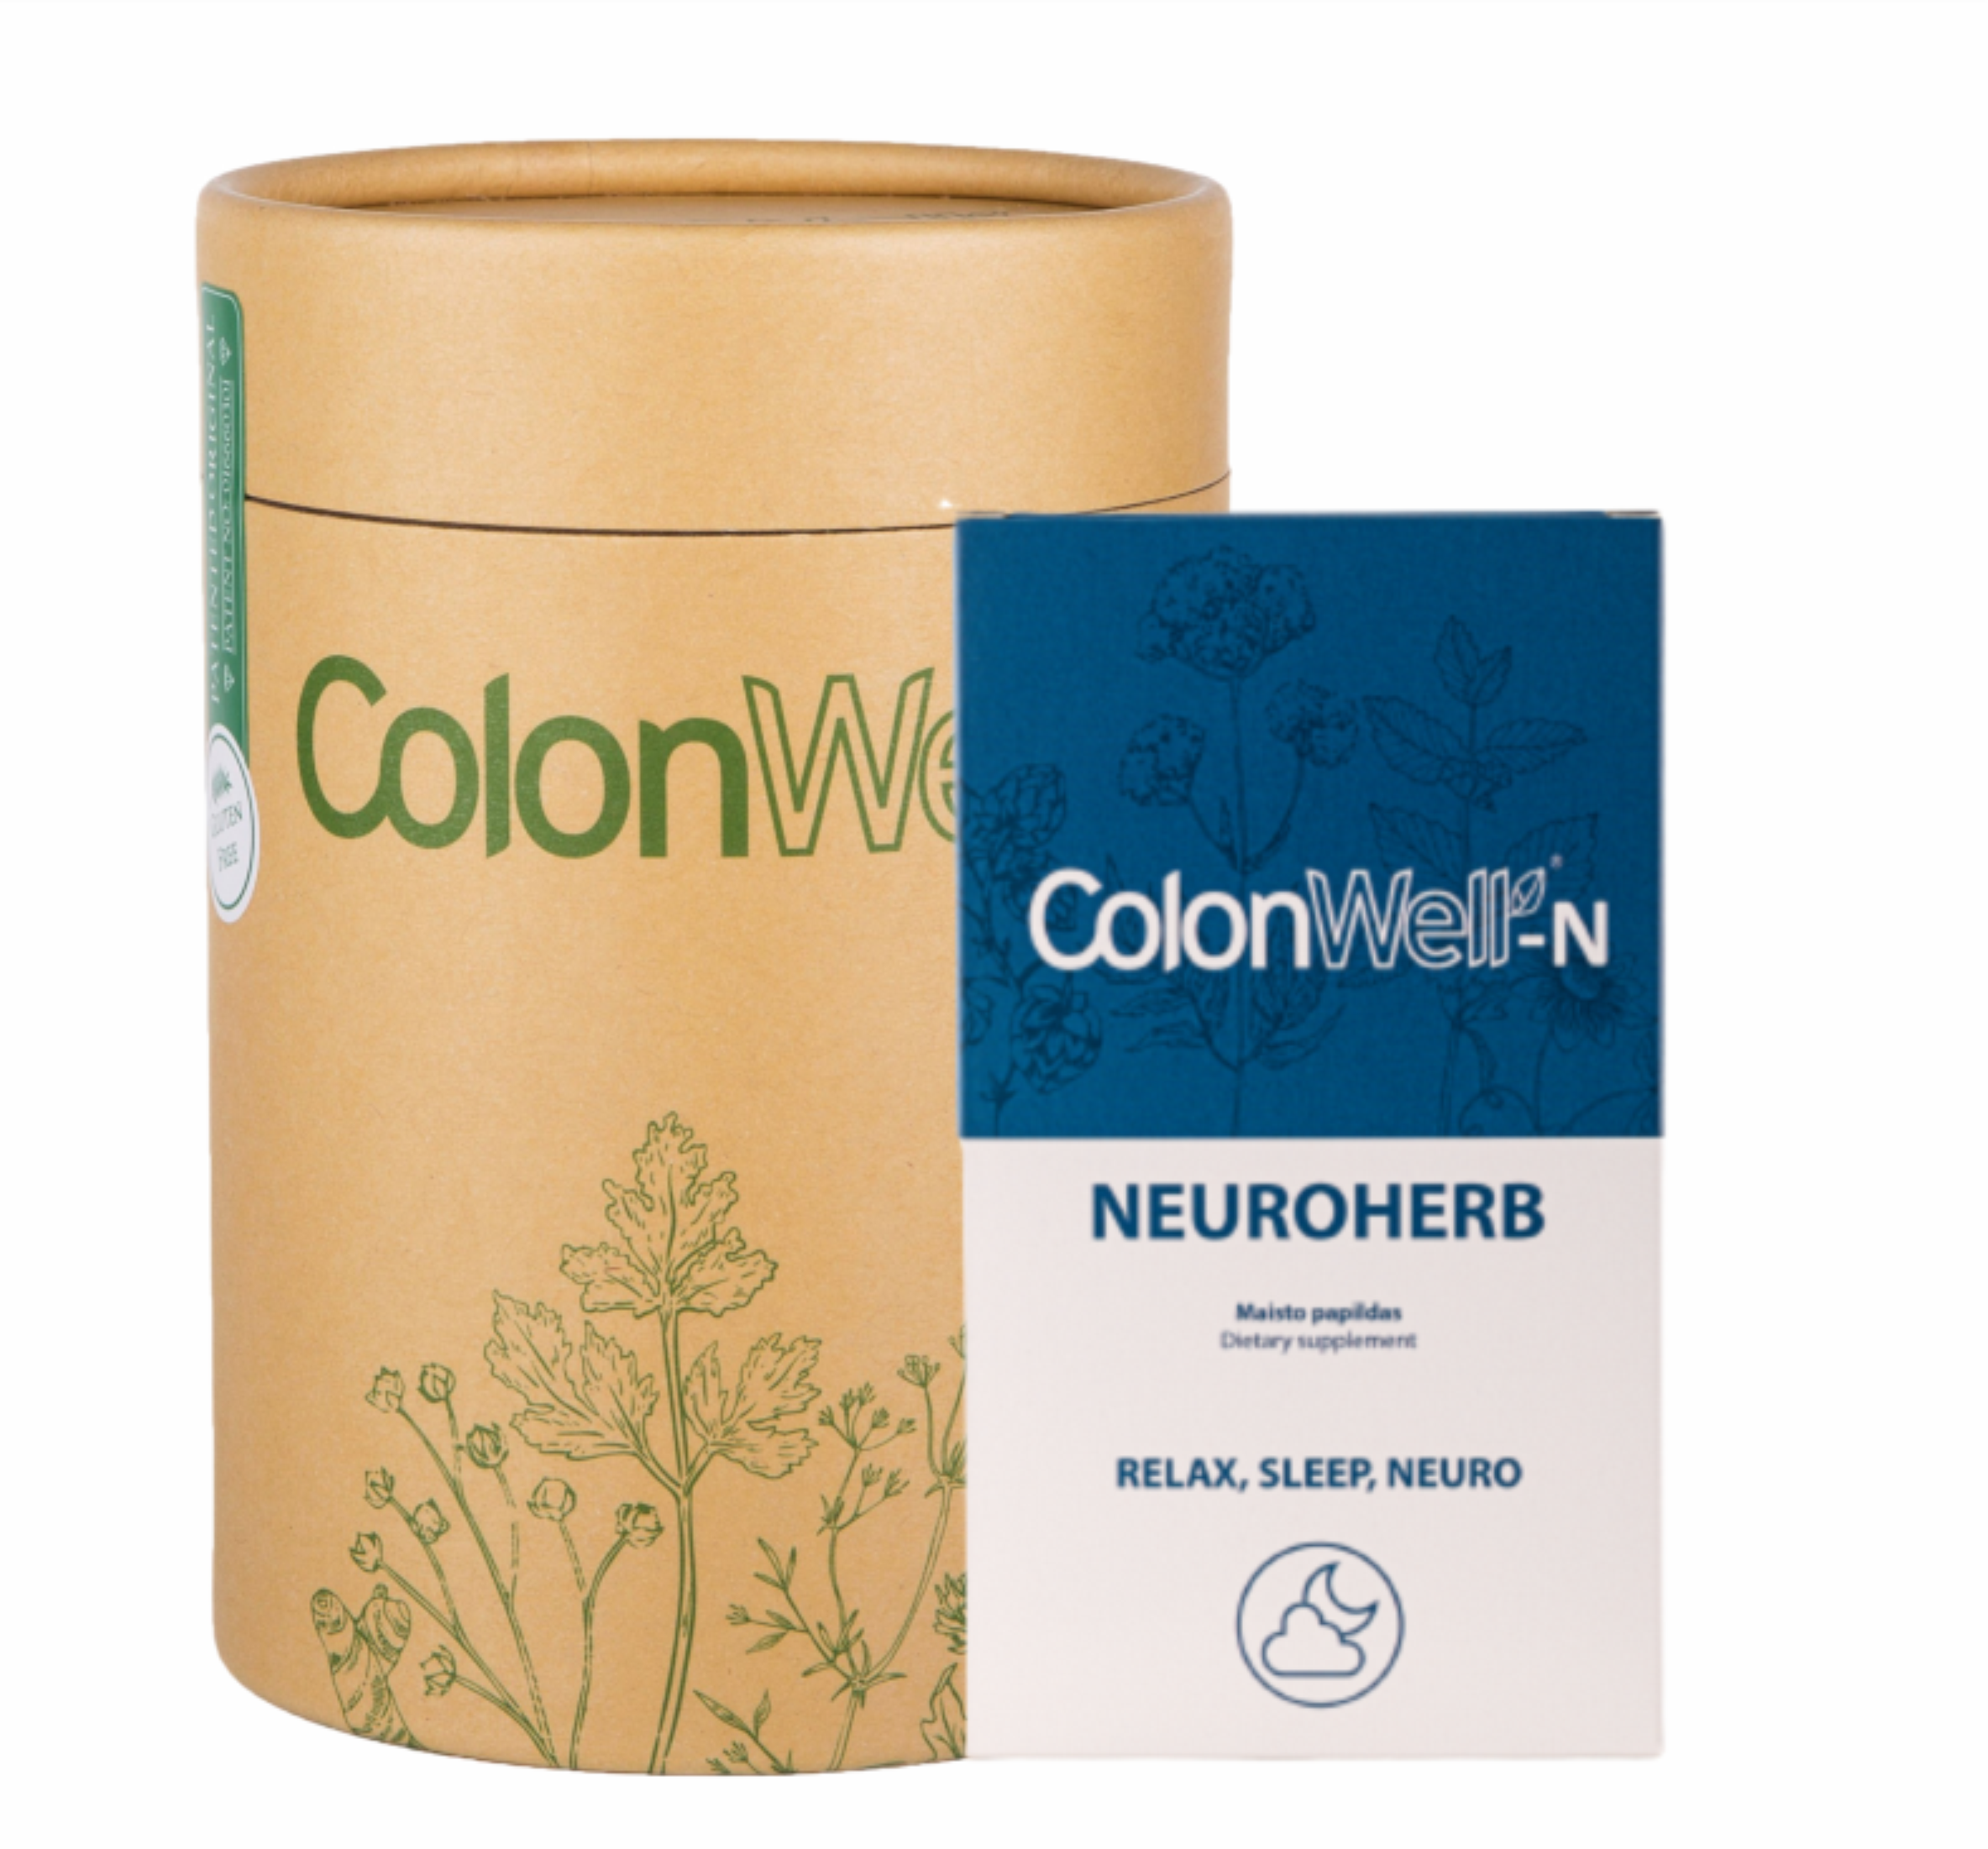 Colonwell.lt produktas - ColonWell - žolelių ir sėklų mišinys (natūralaus skonio) 400g. + Neuroherb - maisto papildas (miegui, nervų sistemai)